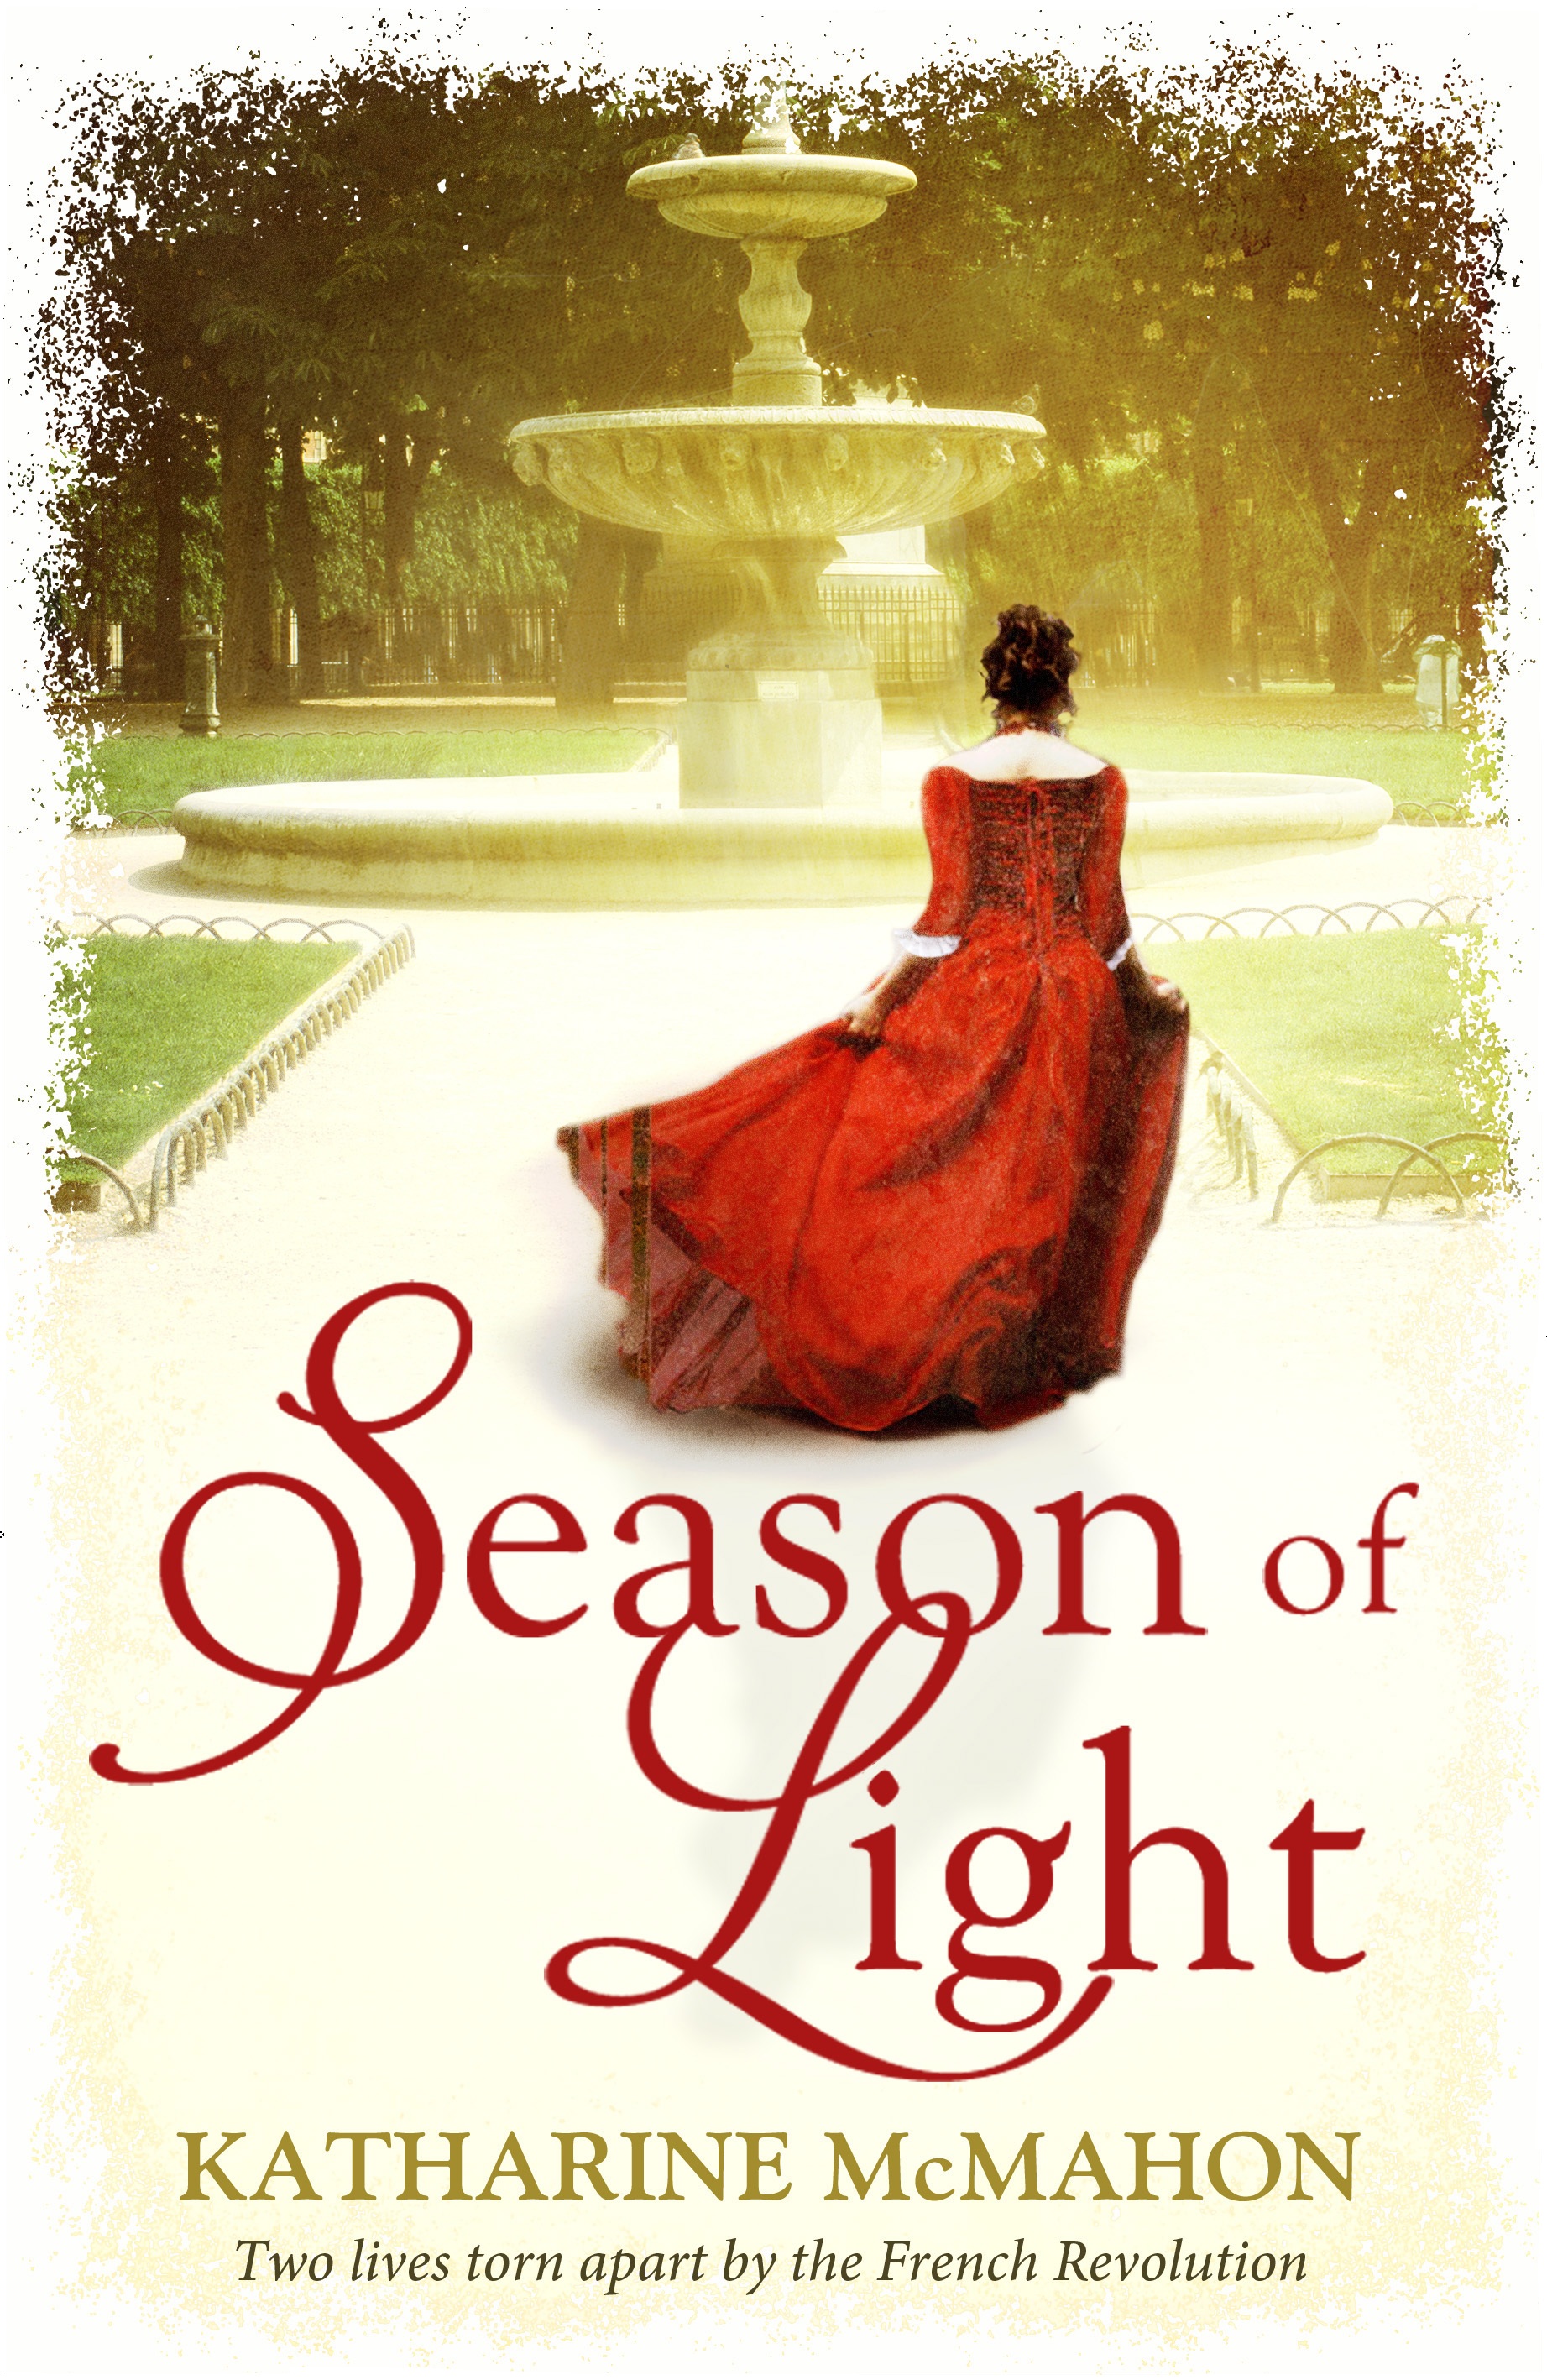 season-of-light-cover.jpg